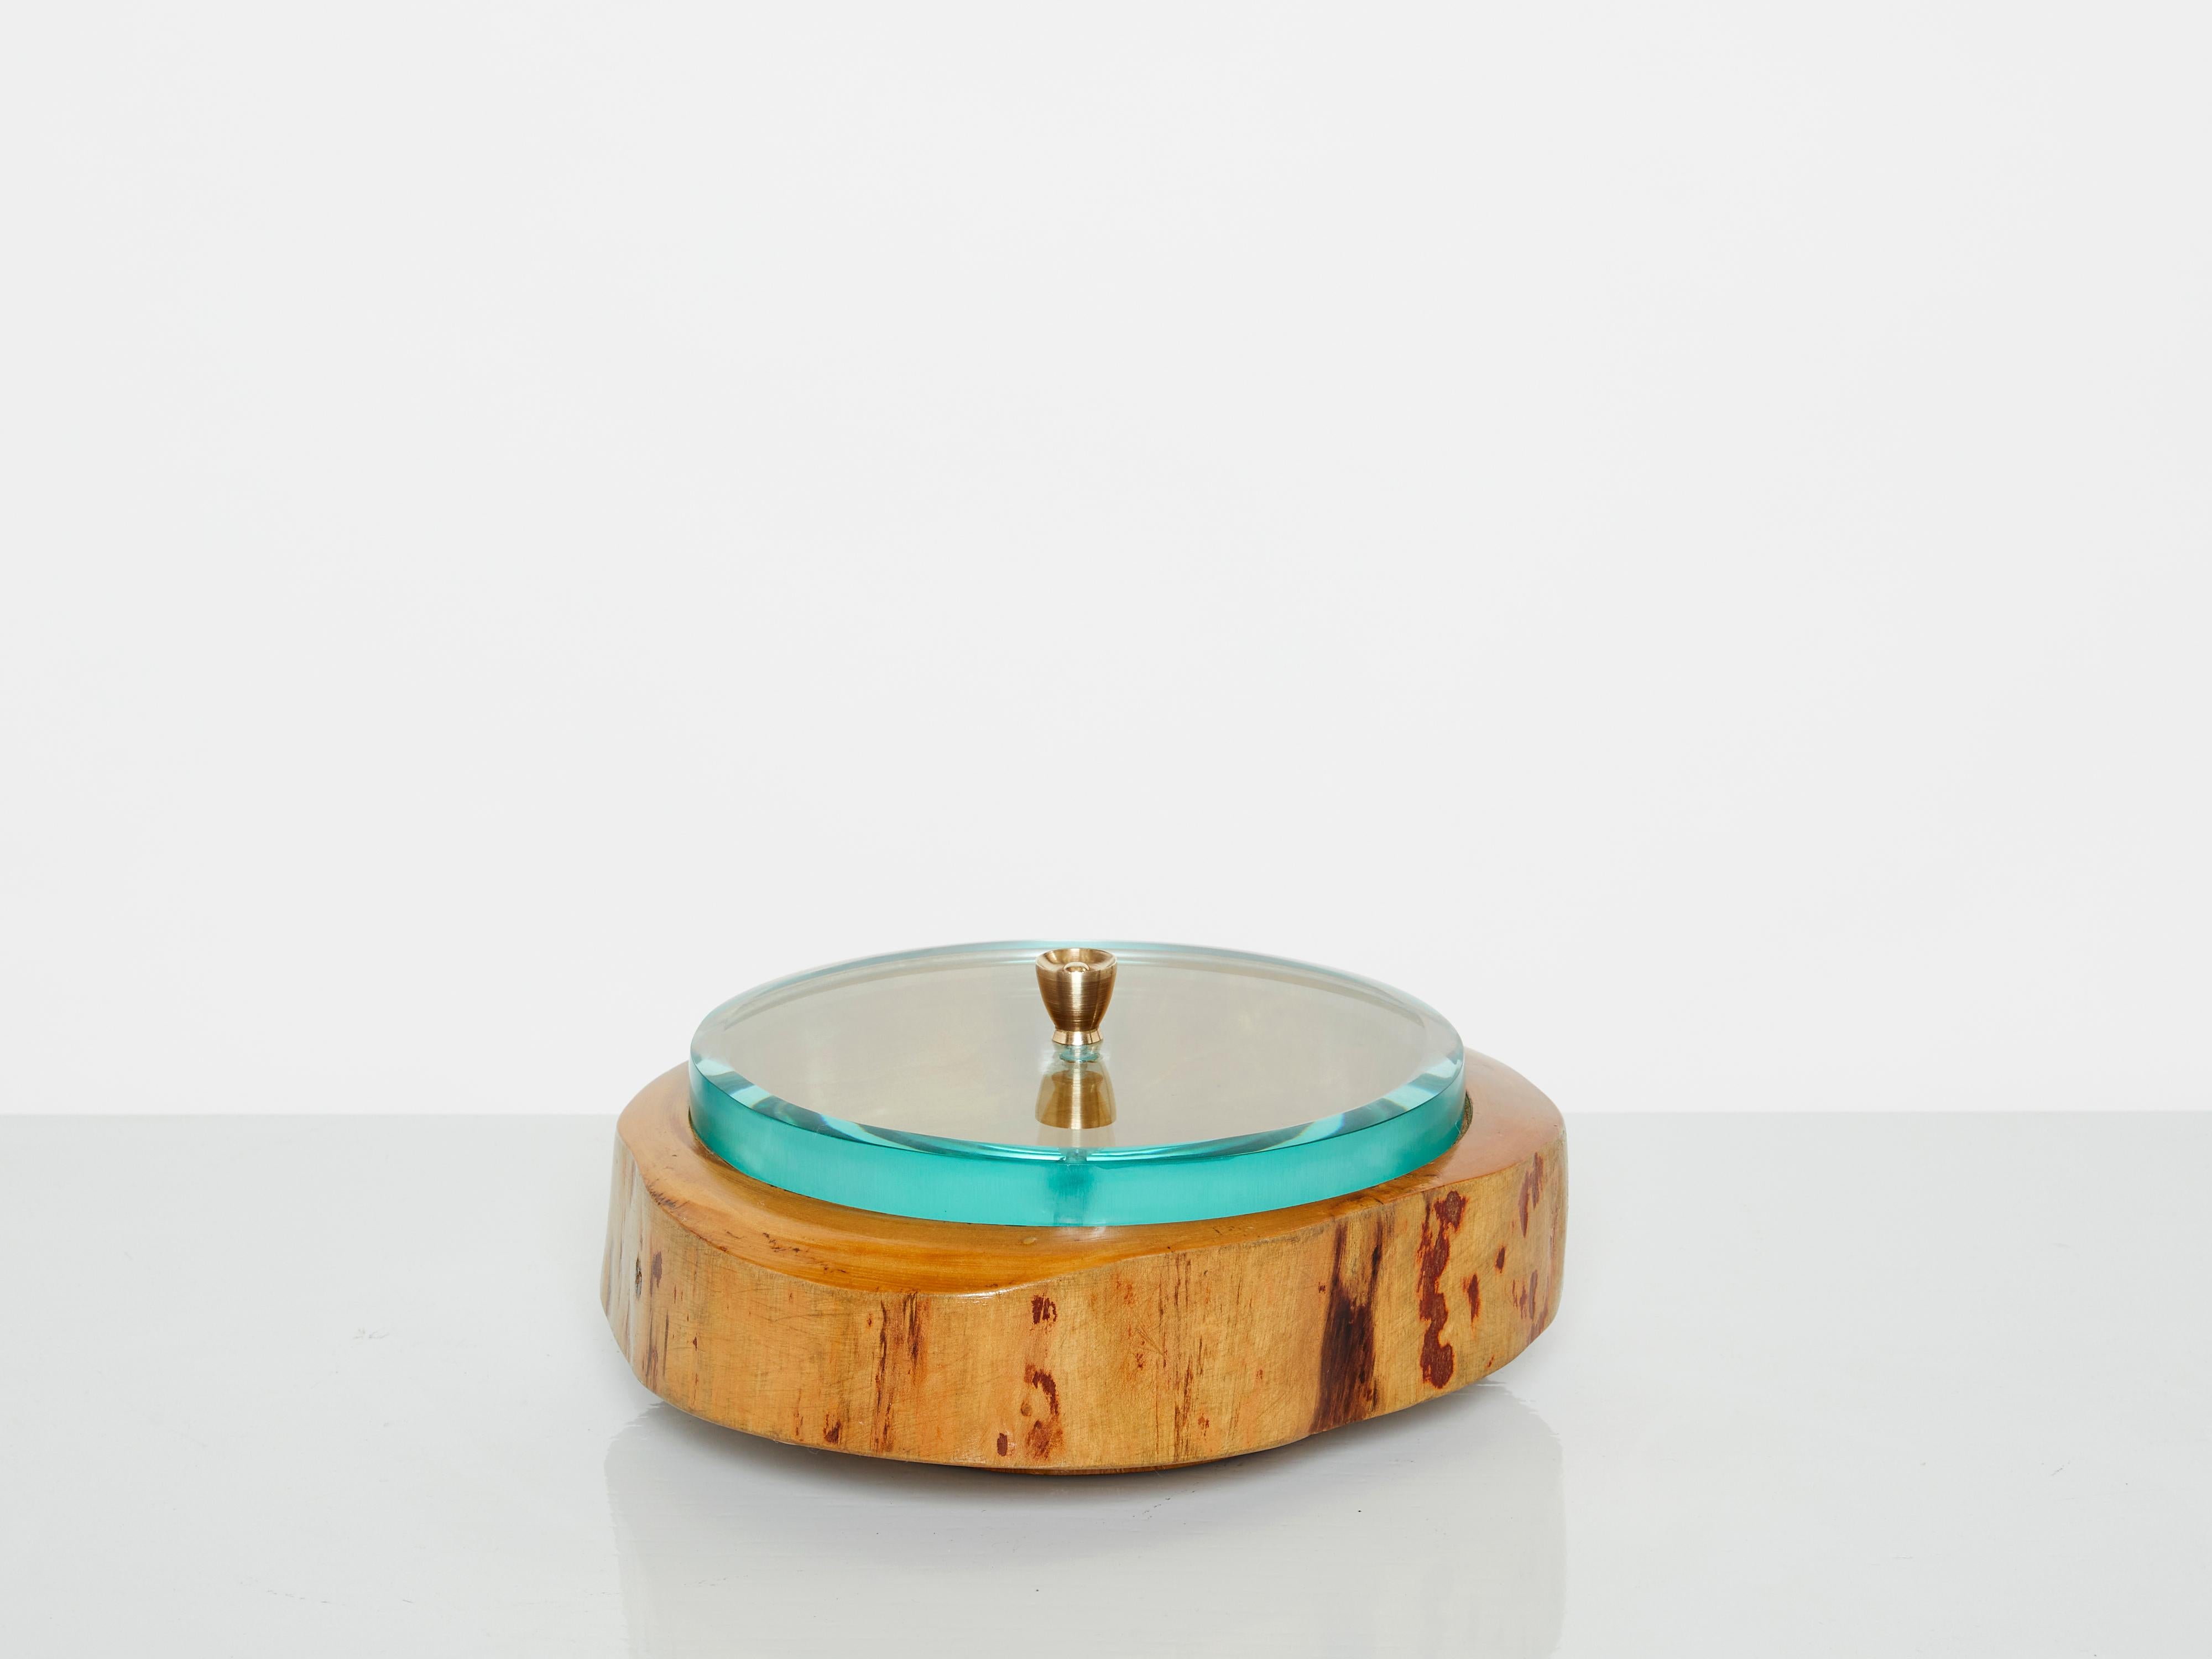 Seltene italienische Pietro Chiesa für Fontana Arte dekorative Box in Italien in den 1940er Jahren gemacht. Aus satiniertem Holz geschnitzt, mit einem dicken Deckel aus geschliffenem aquamarinblauem Glas und einem Griff aus Messing, ist dieses